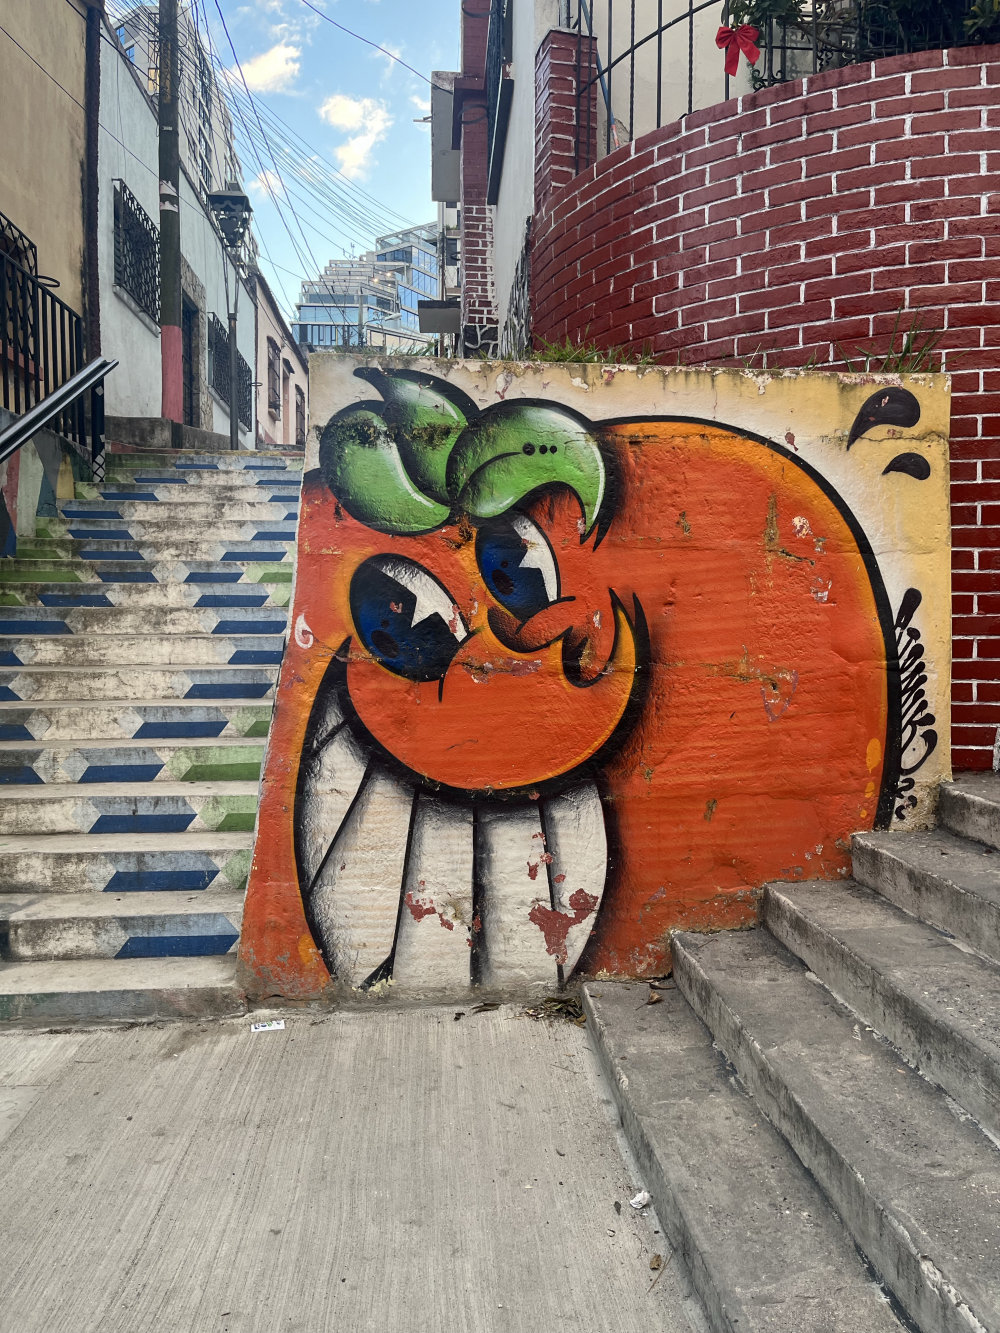 mural in Ciudad de Guatemala by artist Atomik.